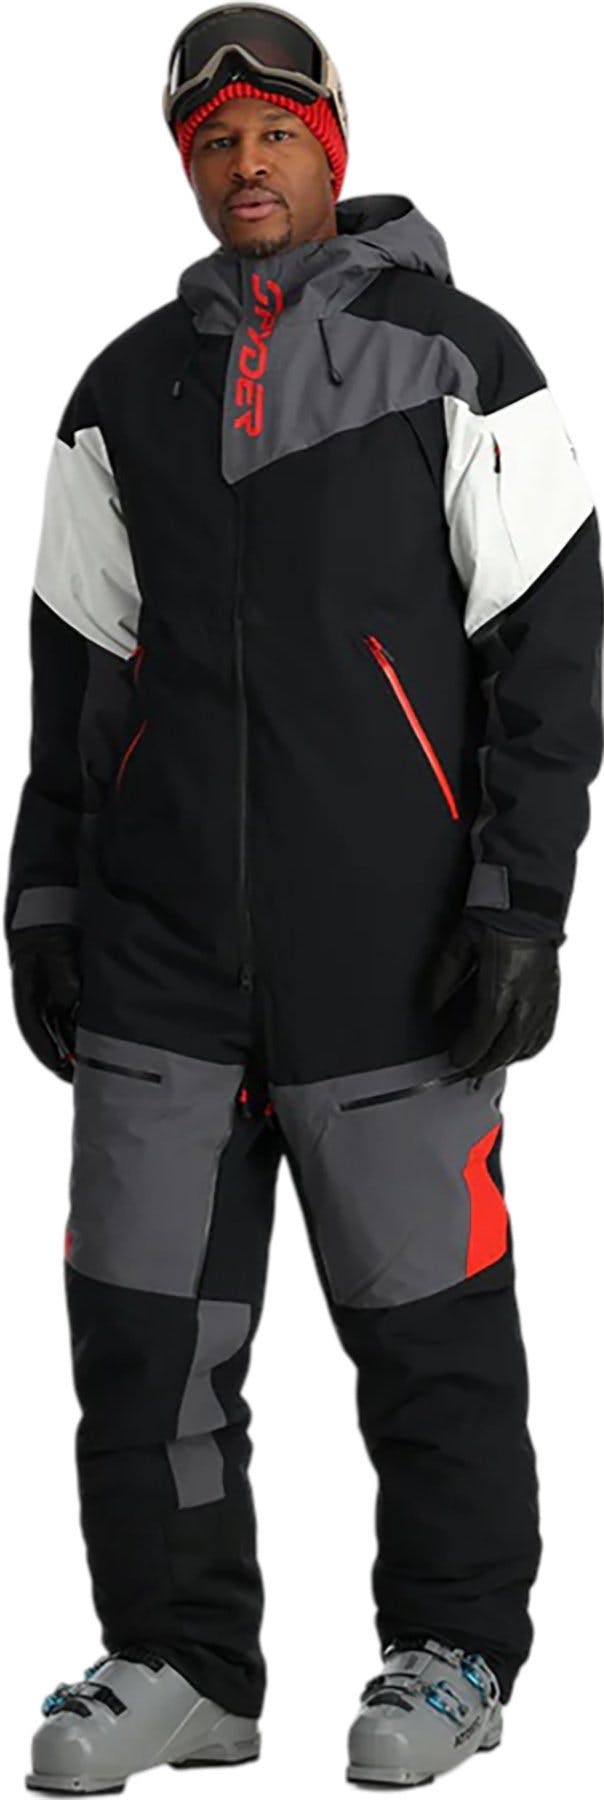 Product image for Utility Snowsuit - Men's